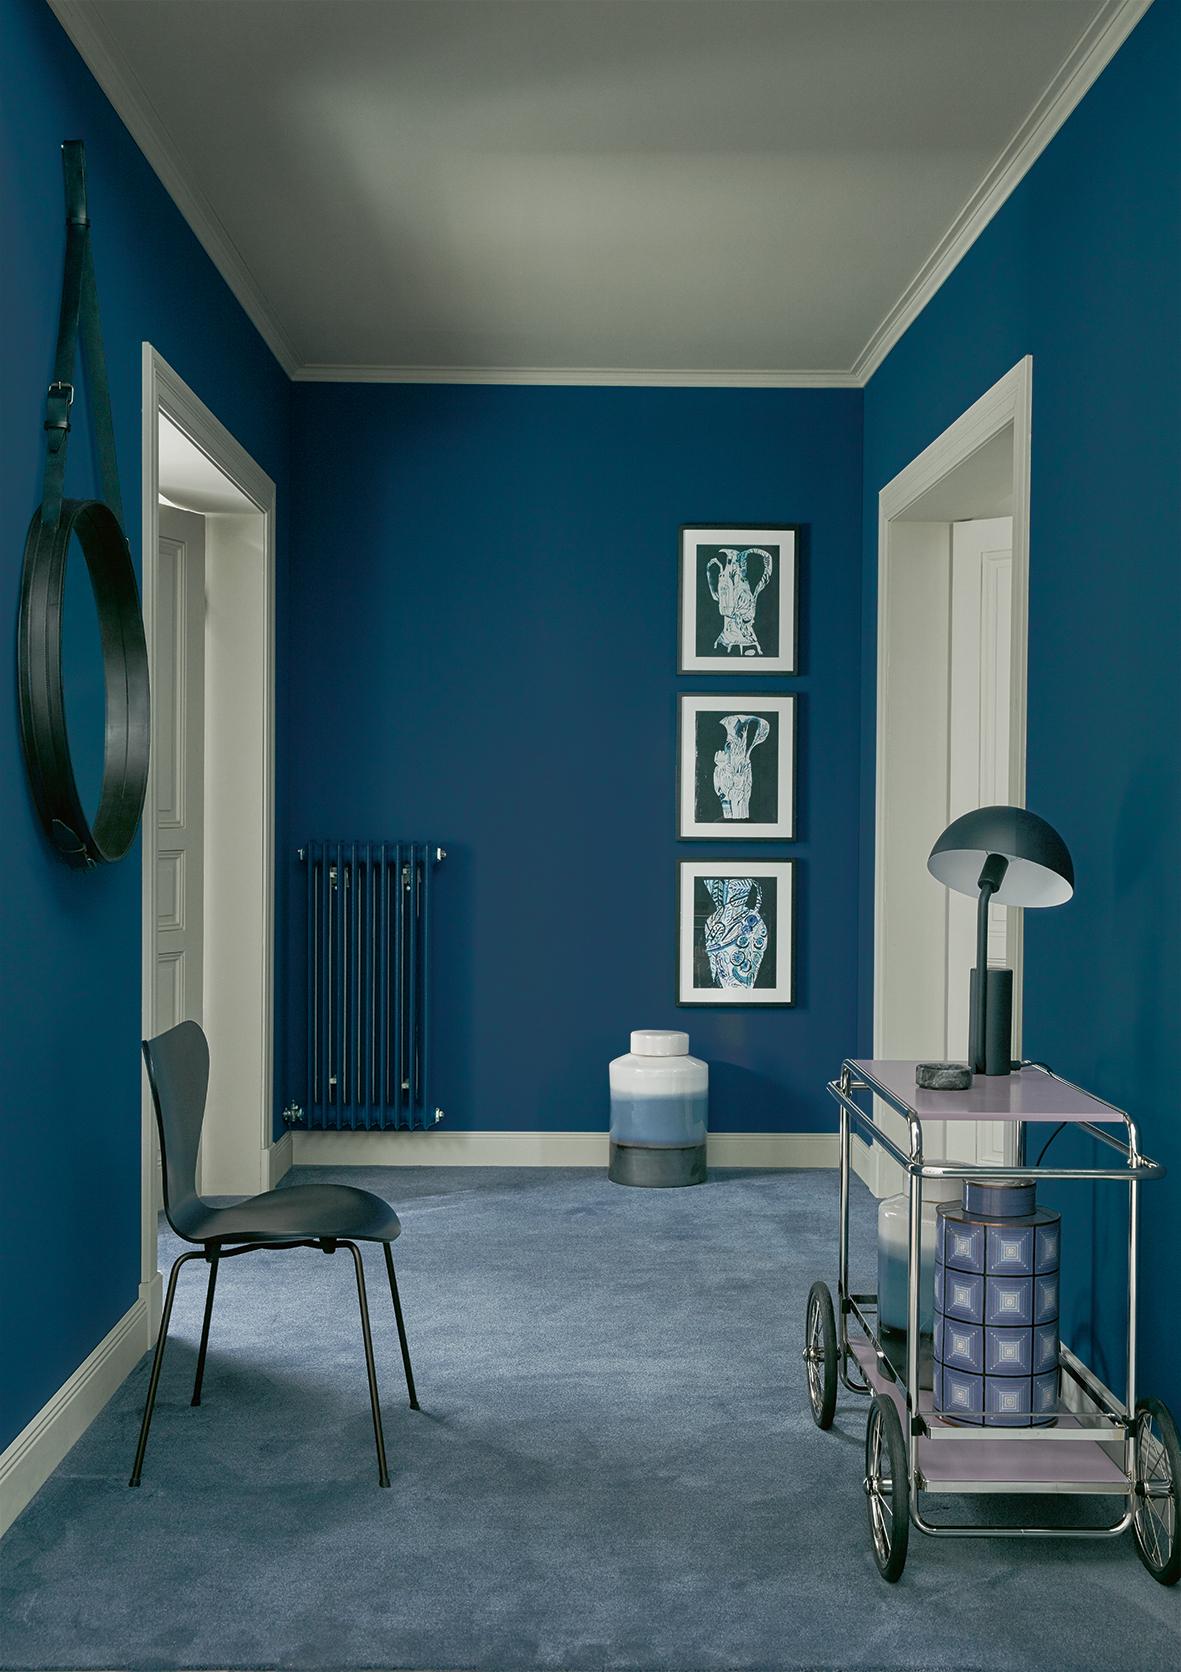 Riviera, SCHÖNER WOHNEN-Trendfarbe #stuhl #wandfarbe #spiegel #wandgestaltung #lampe #tisch #blauewandfarbe #schönerwohnenfarbeblau